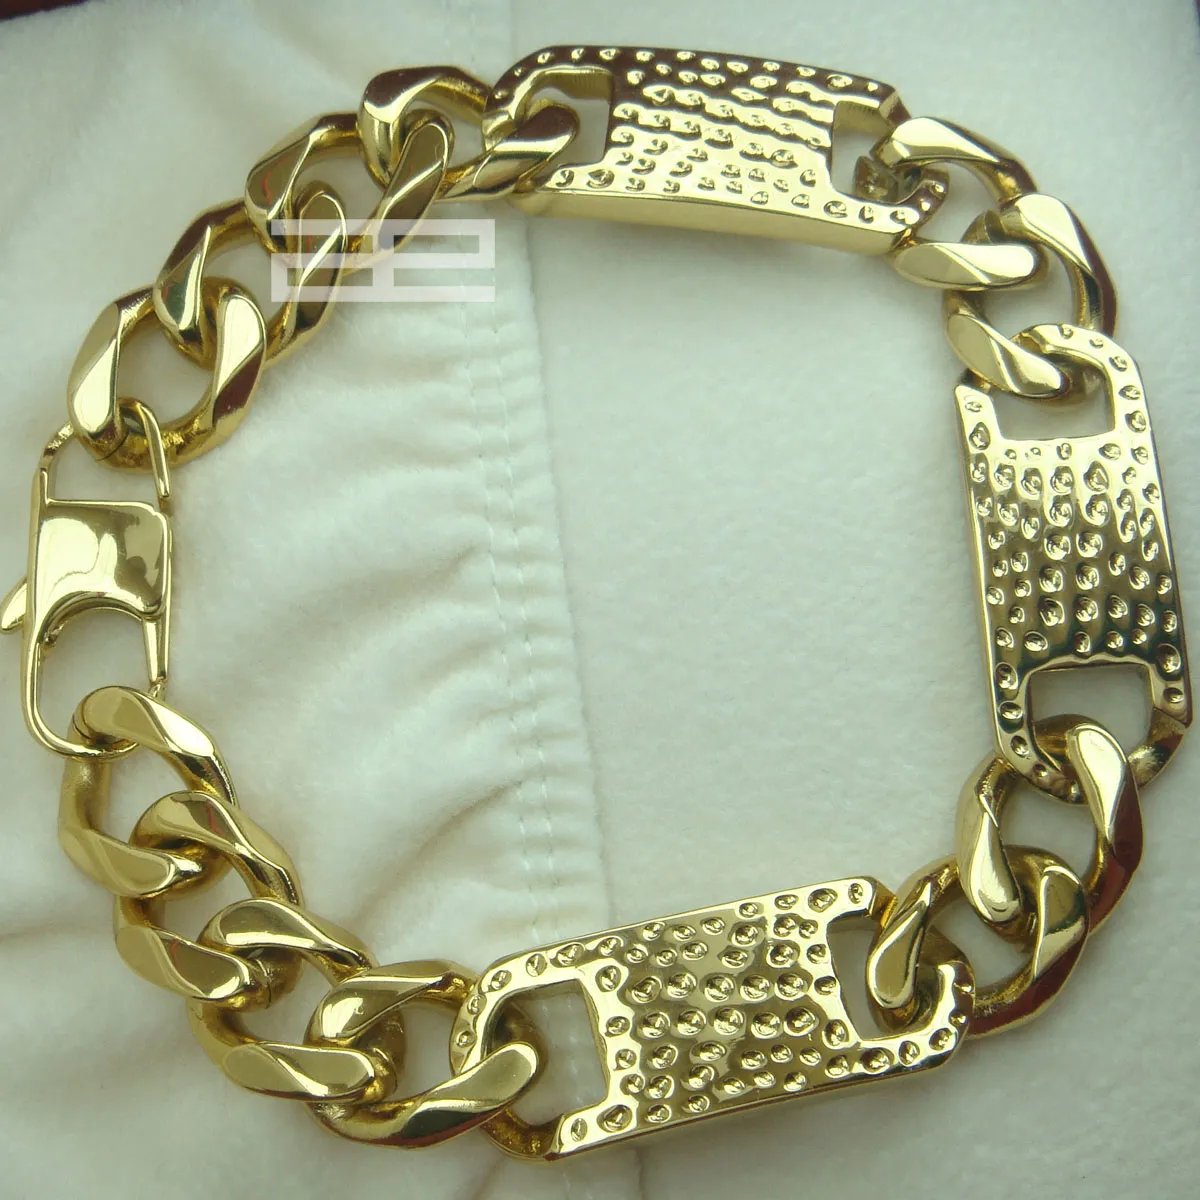 Vintage 14k Gold Greek Key Pattern Bracelet, Versace Style Gold Bracelet,  14ct Yellow Gold Vintage Bracelet, Patterned 14k Gold Bracelet - Etsy